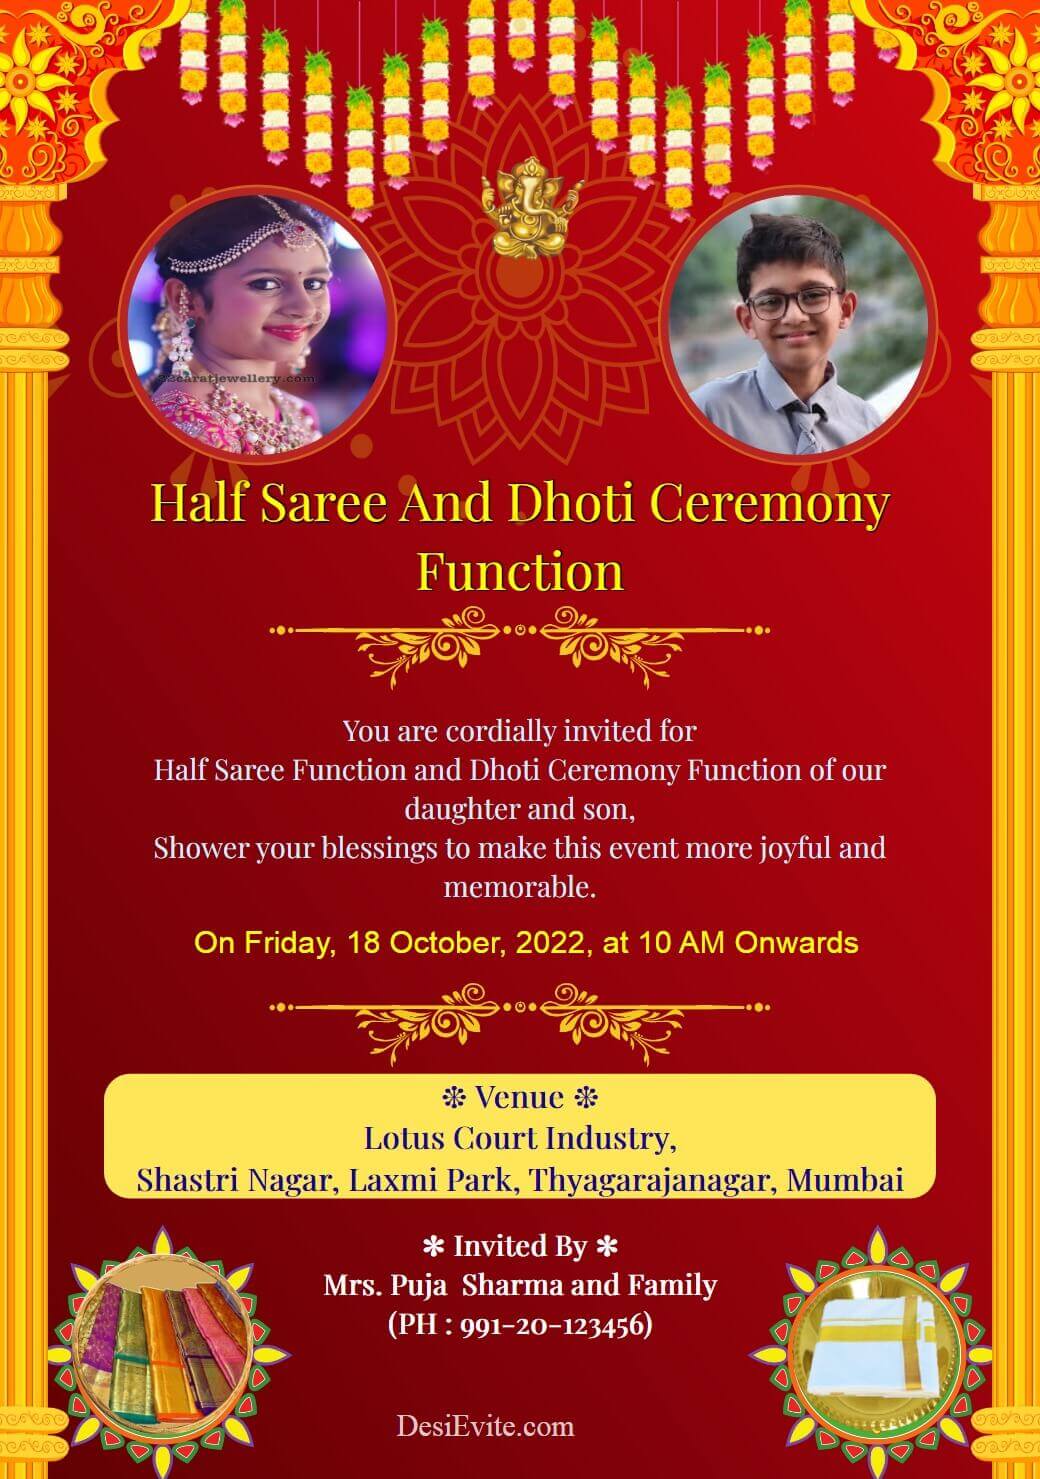 Half Saree Ceremony Video Invitation | Voni Function | Inviter Video  Invitations - YouTube